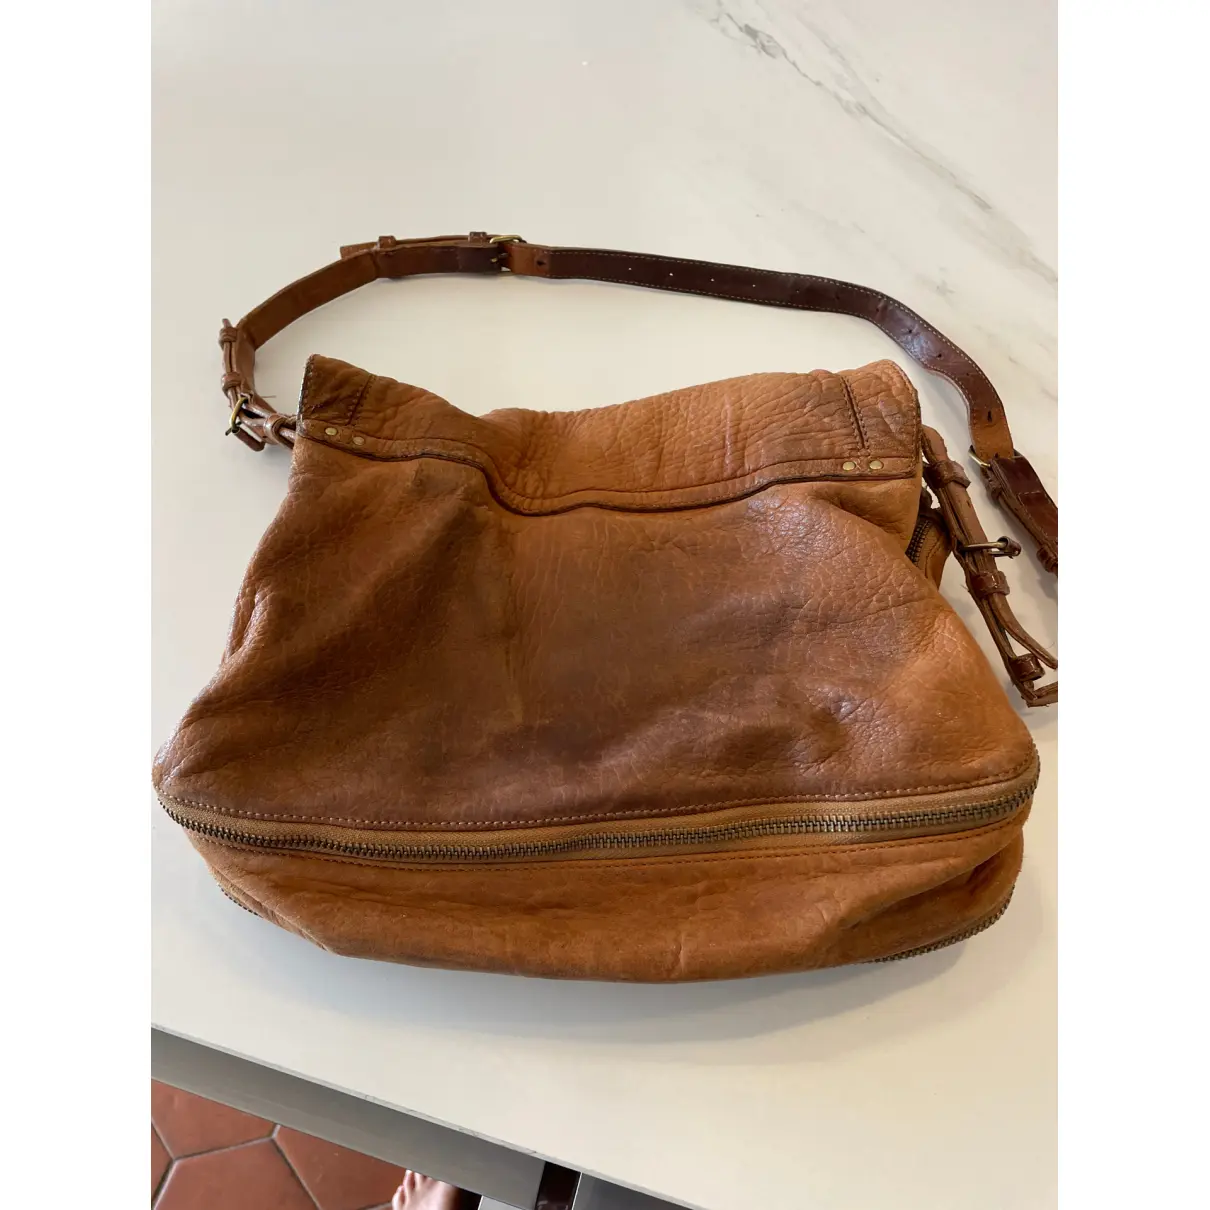 Buy Jerome Dreyfuss Albert leather handbag online